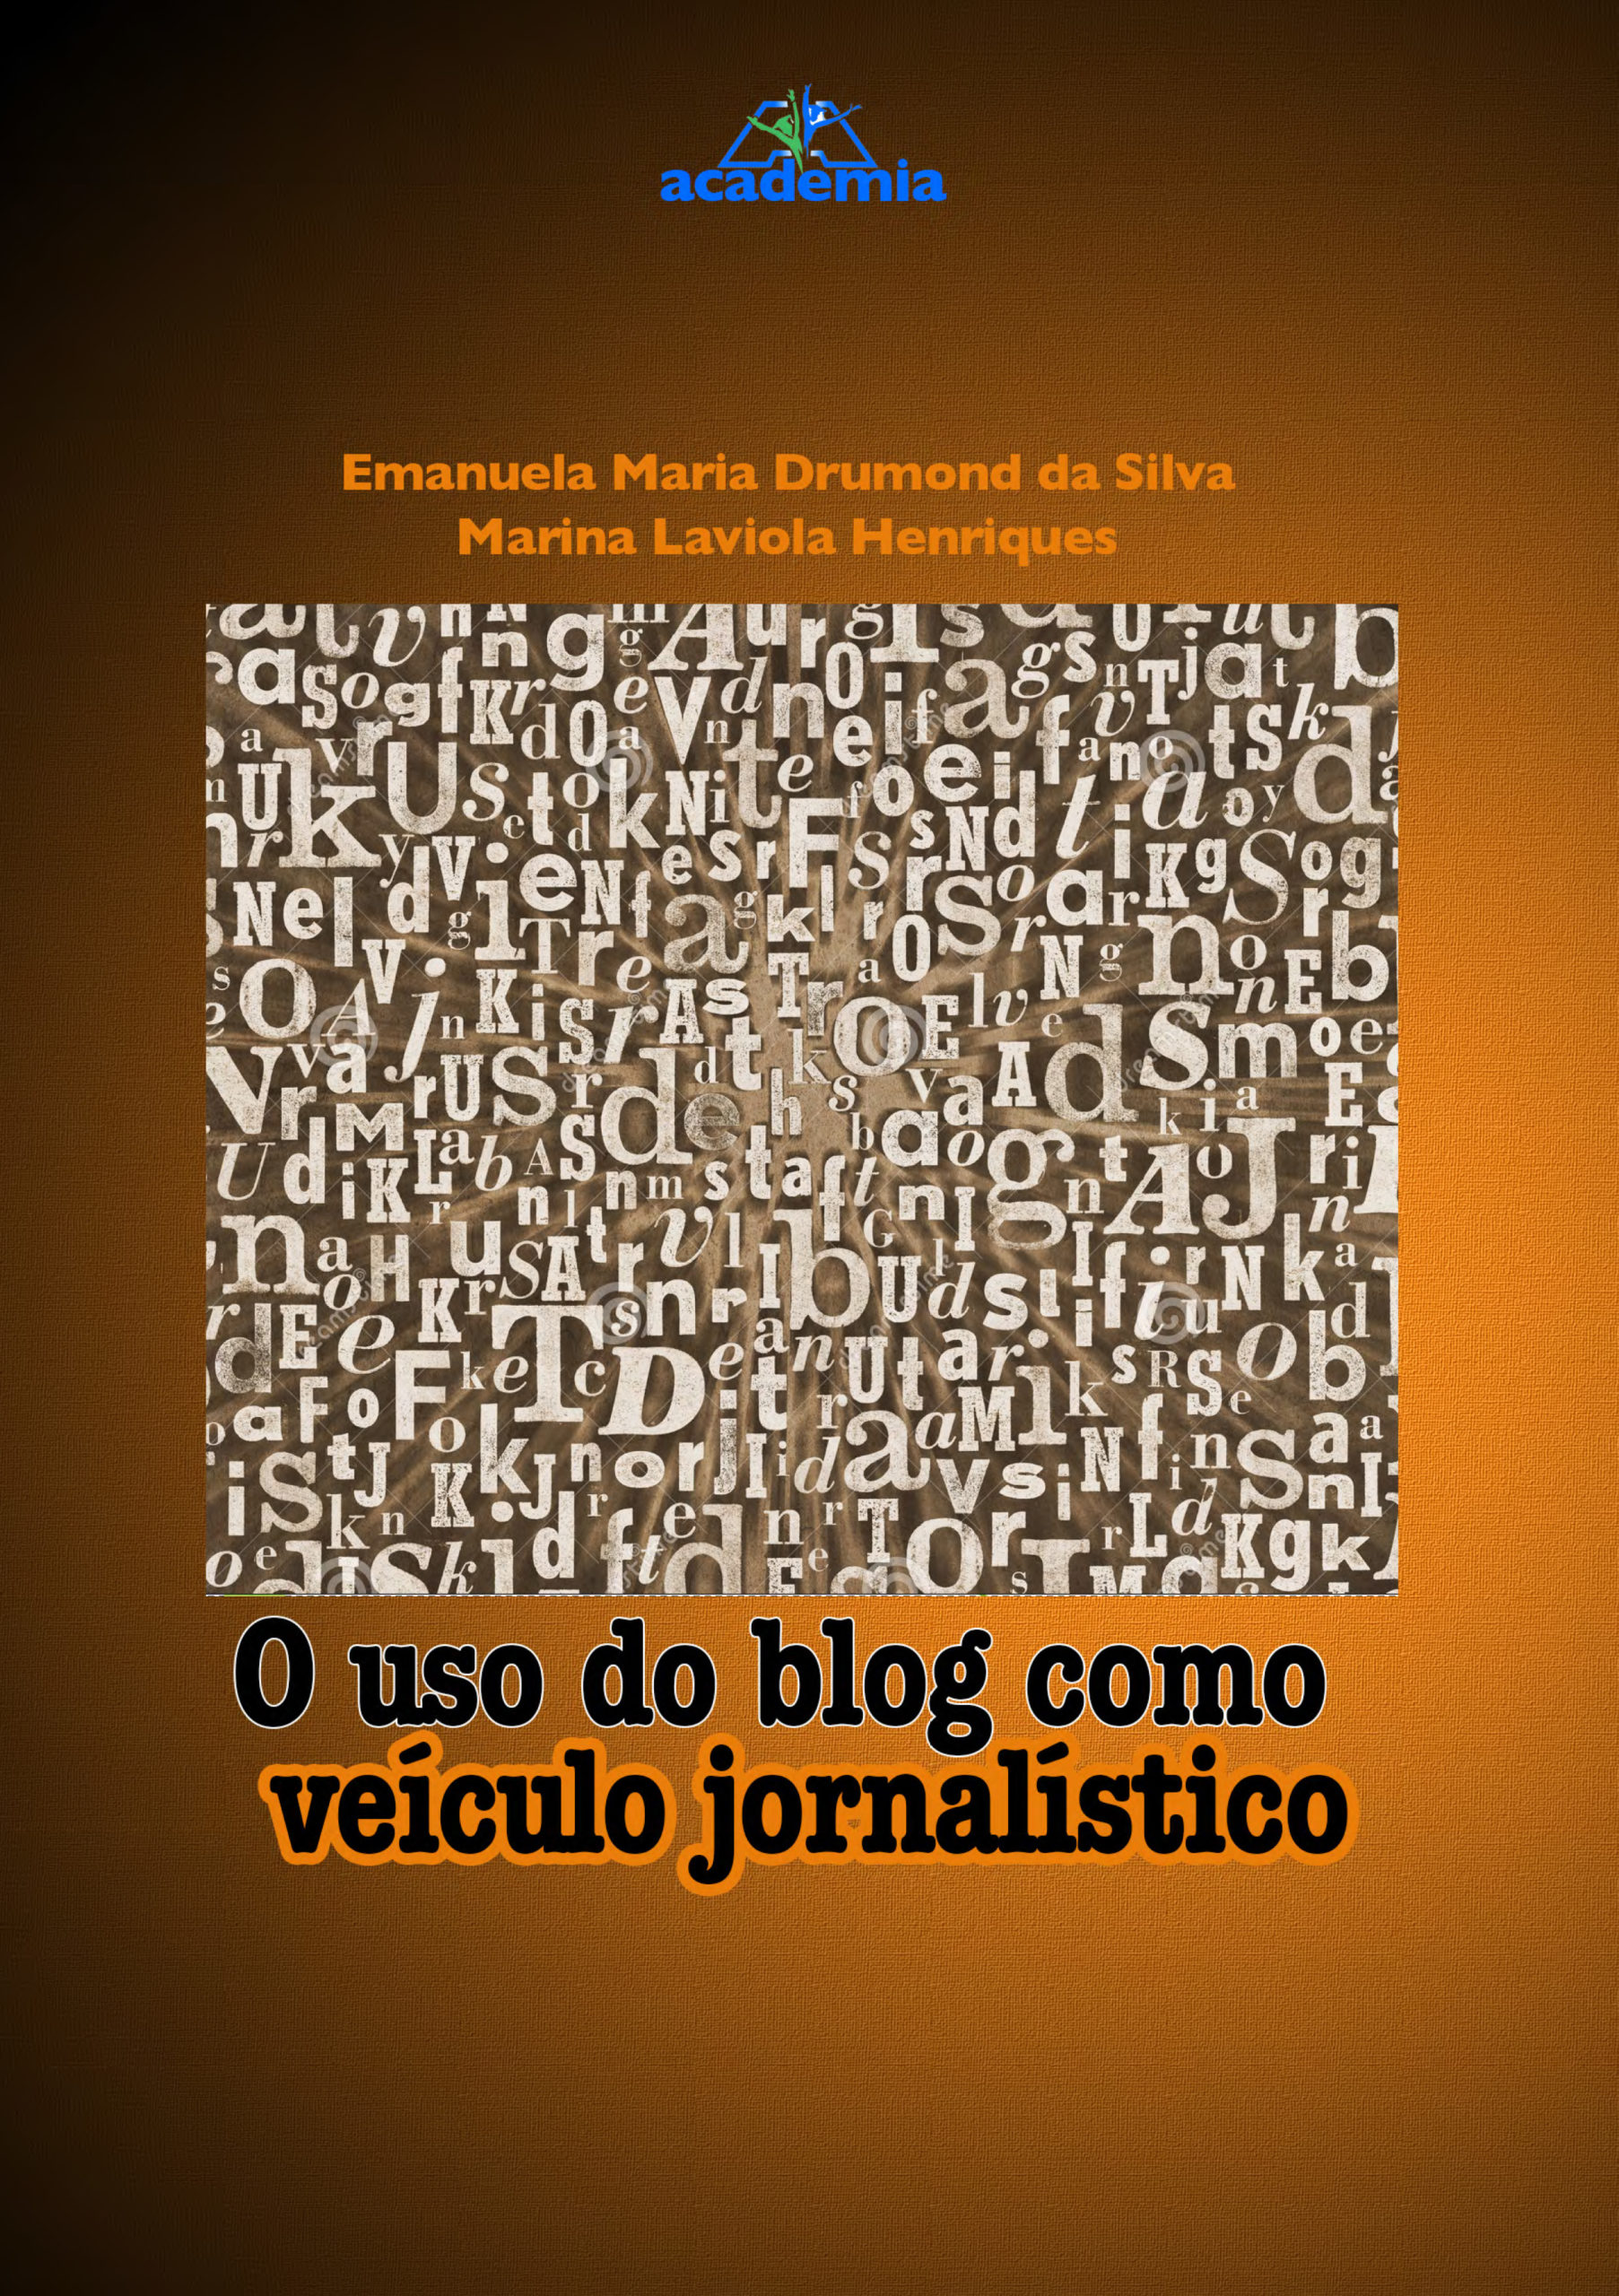 O uso do blog como veículo jornalístico